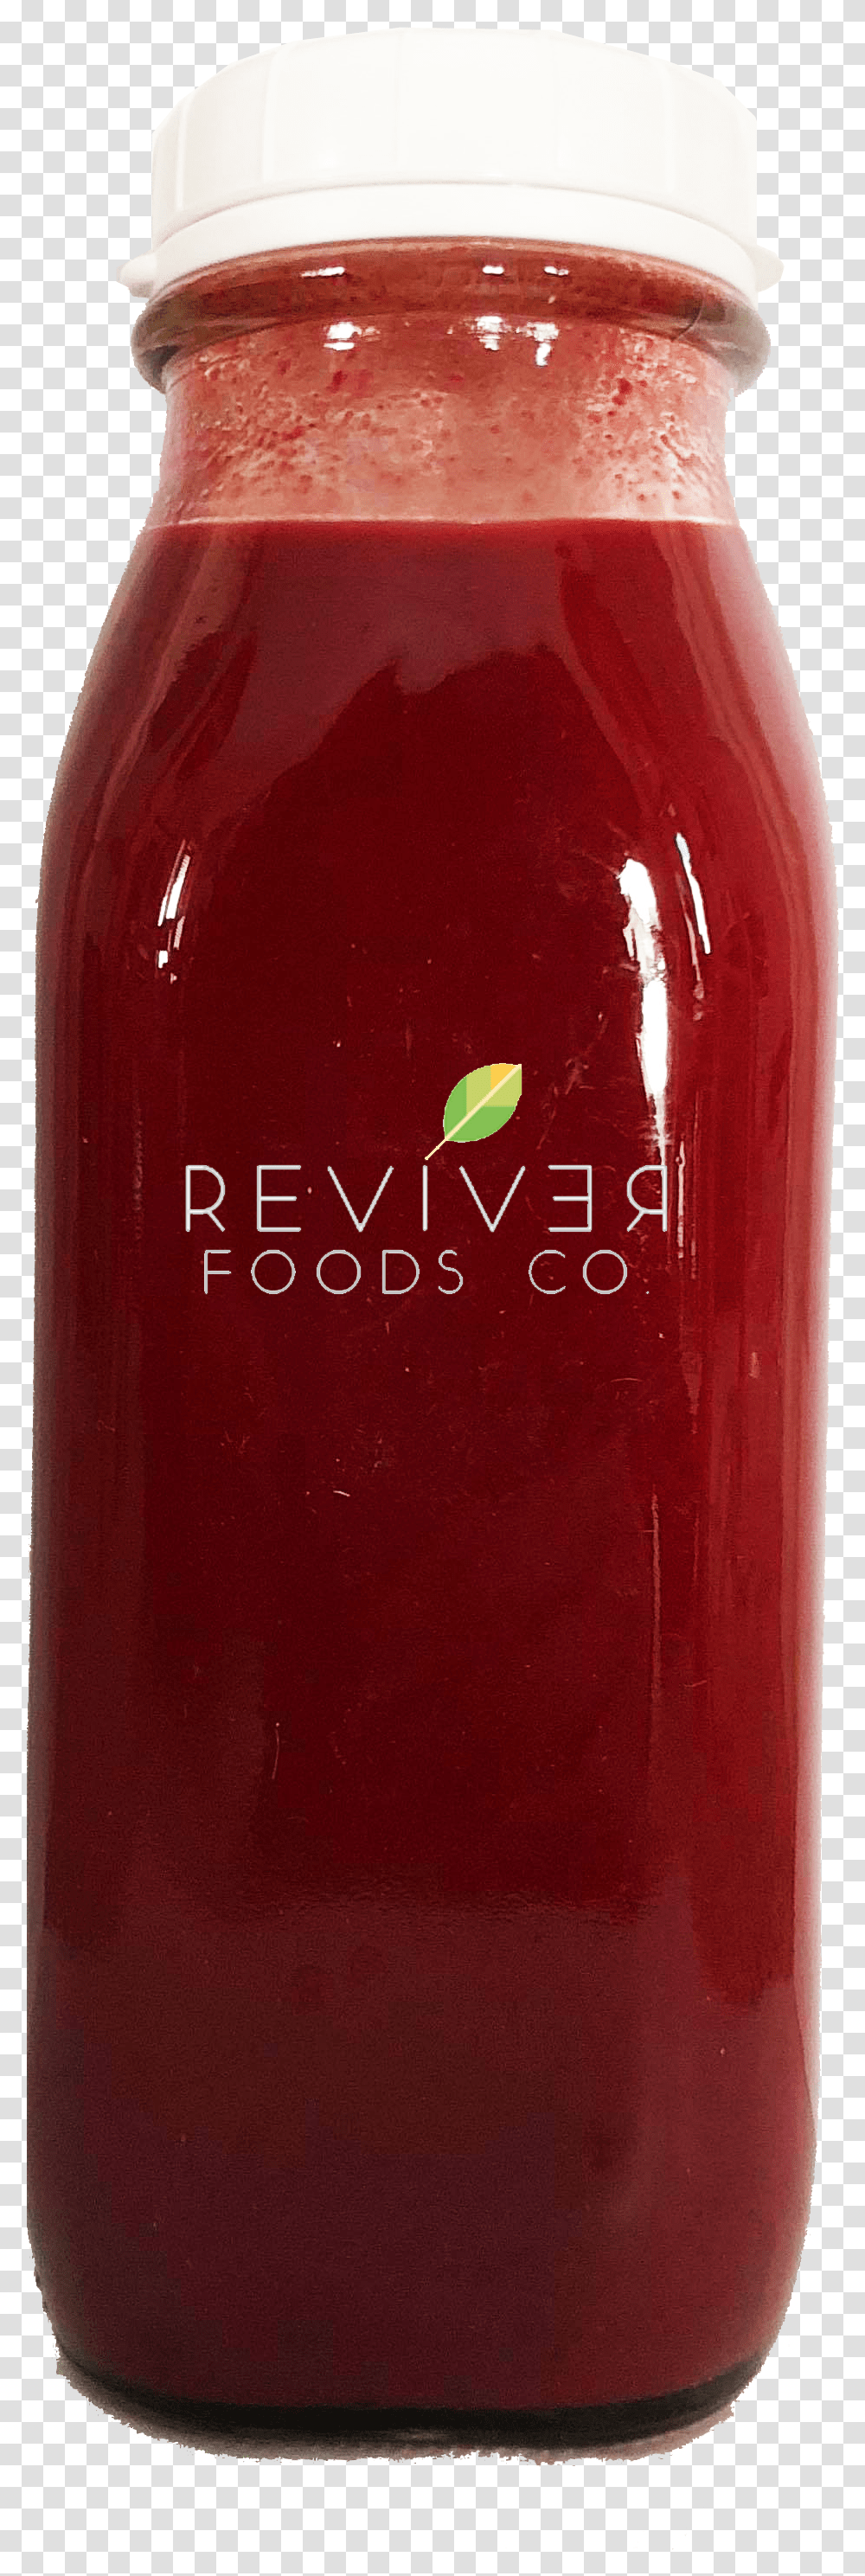 Fresh Alive Puree Juice Bottle Vegetable Juice, Ketchup, Food, Jar, Tin Transparent Png